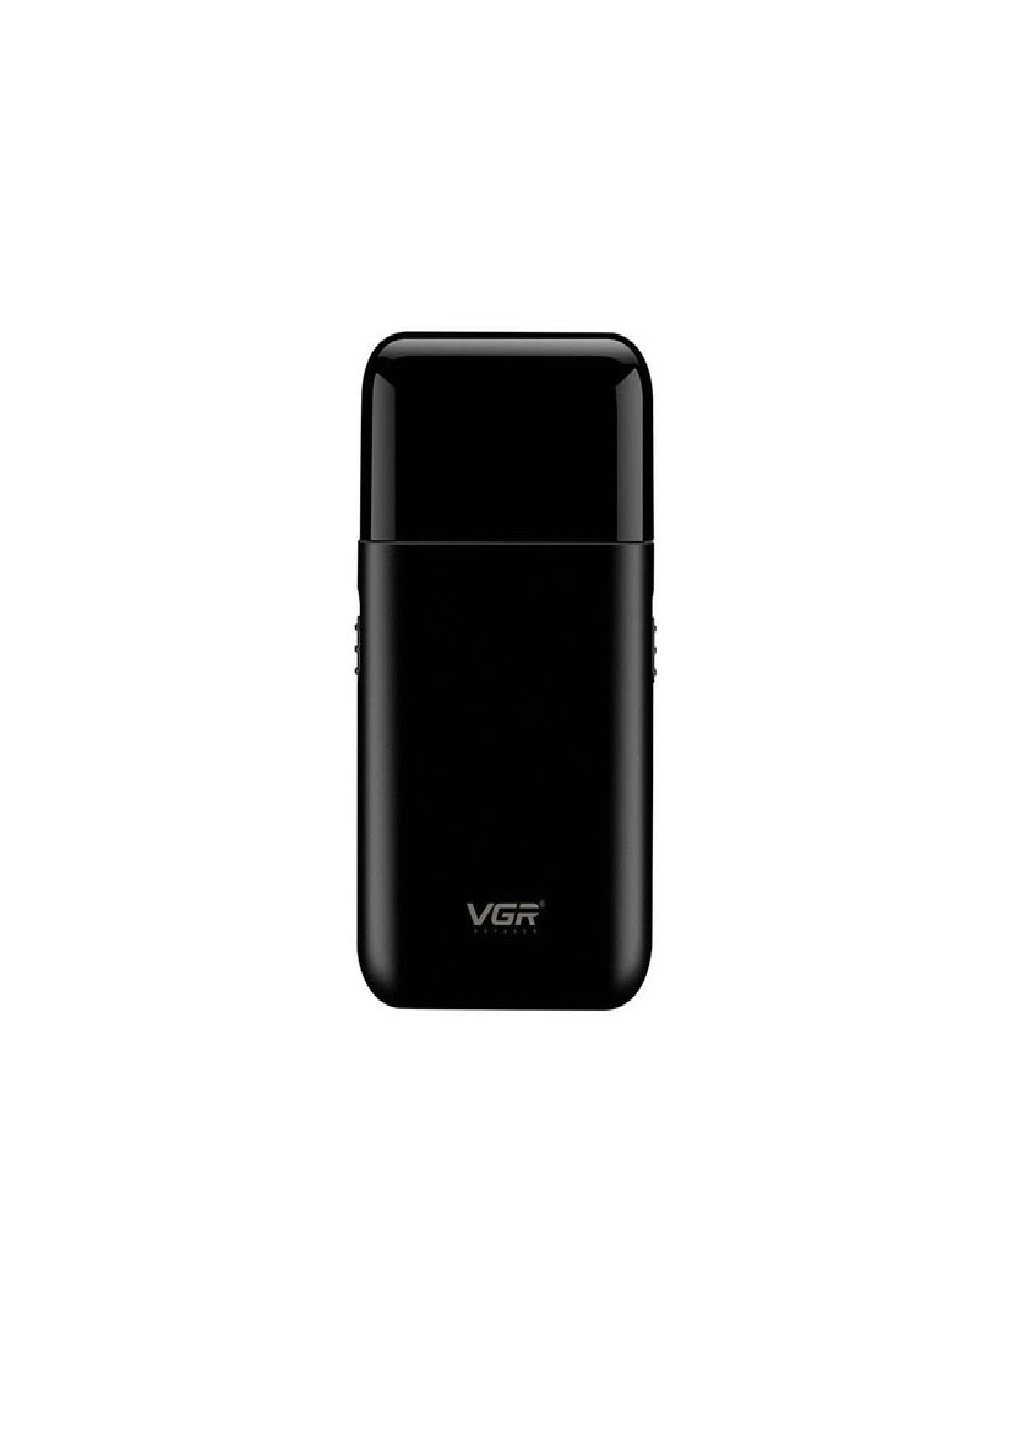 Електробритва V-390 бритва акумуляторна VGR (277979656)